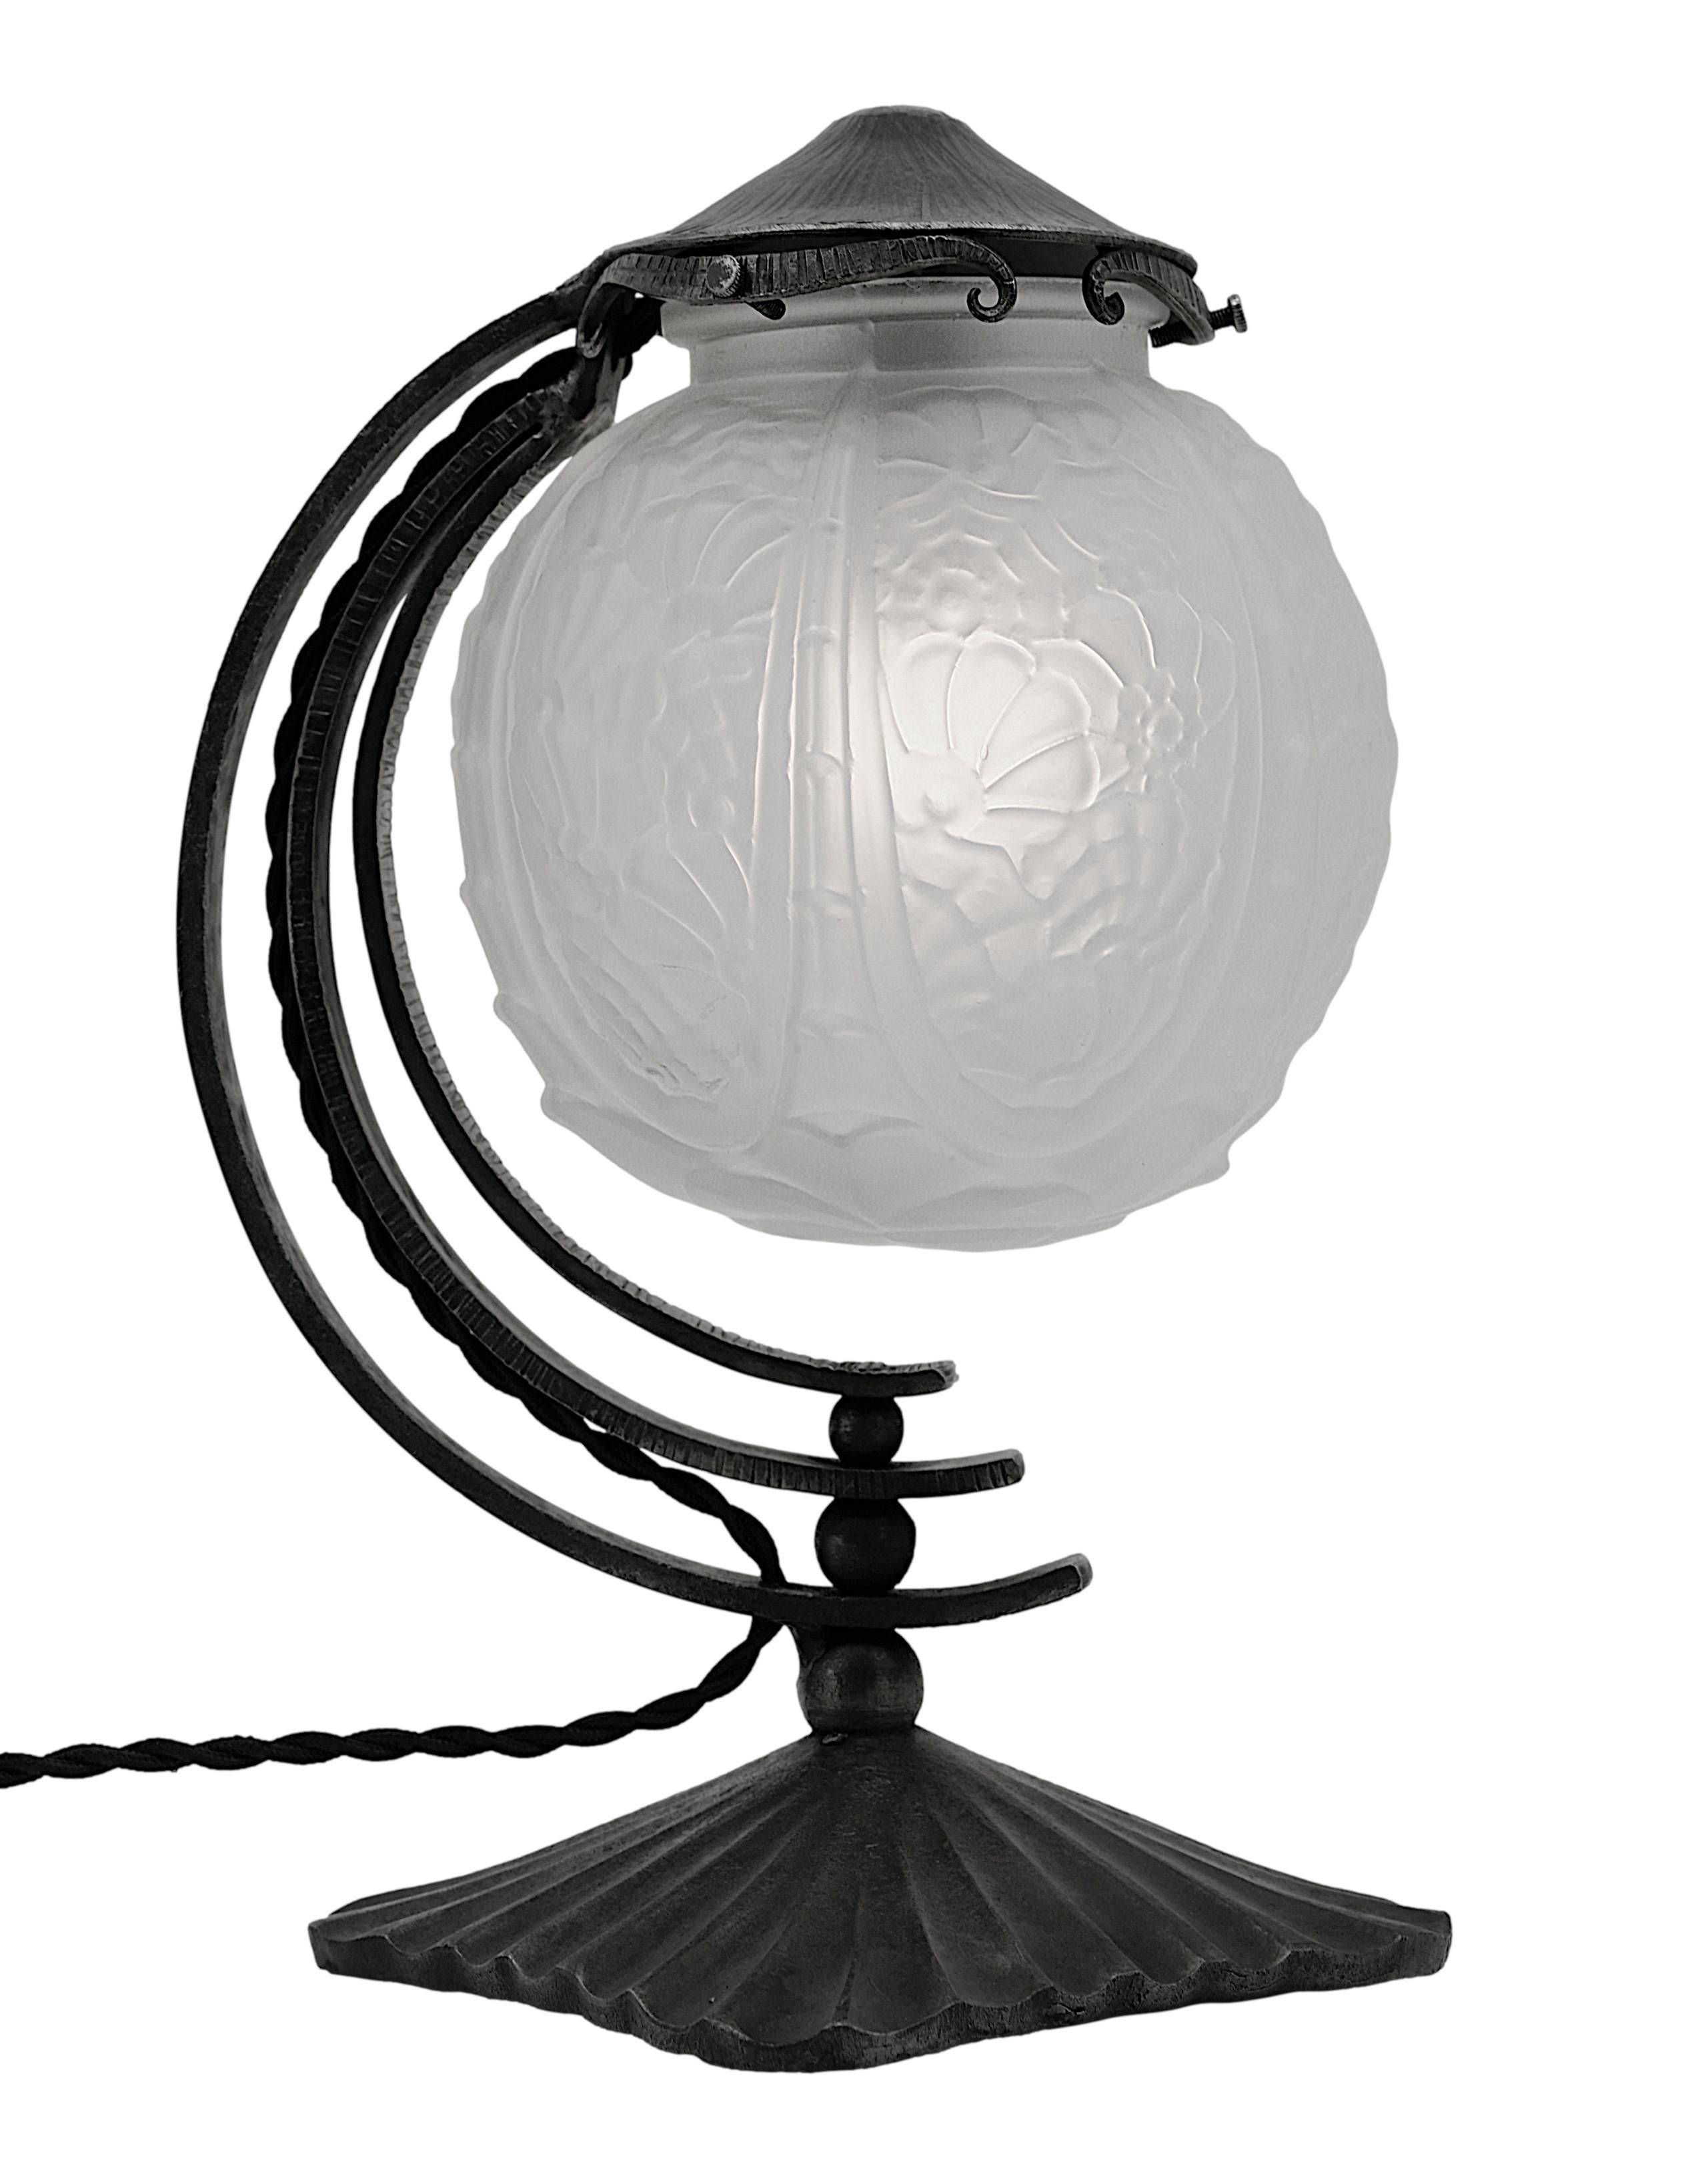 Cherrier & Besnus French Art Deco Table Lamp, Ca.1925 For Sale 2